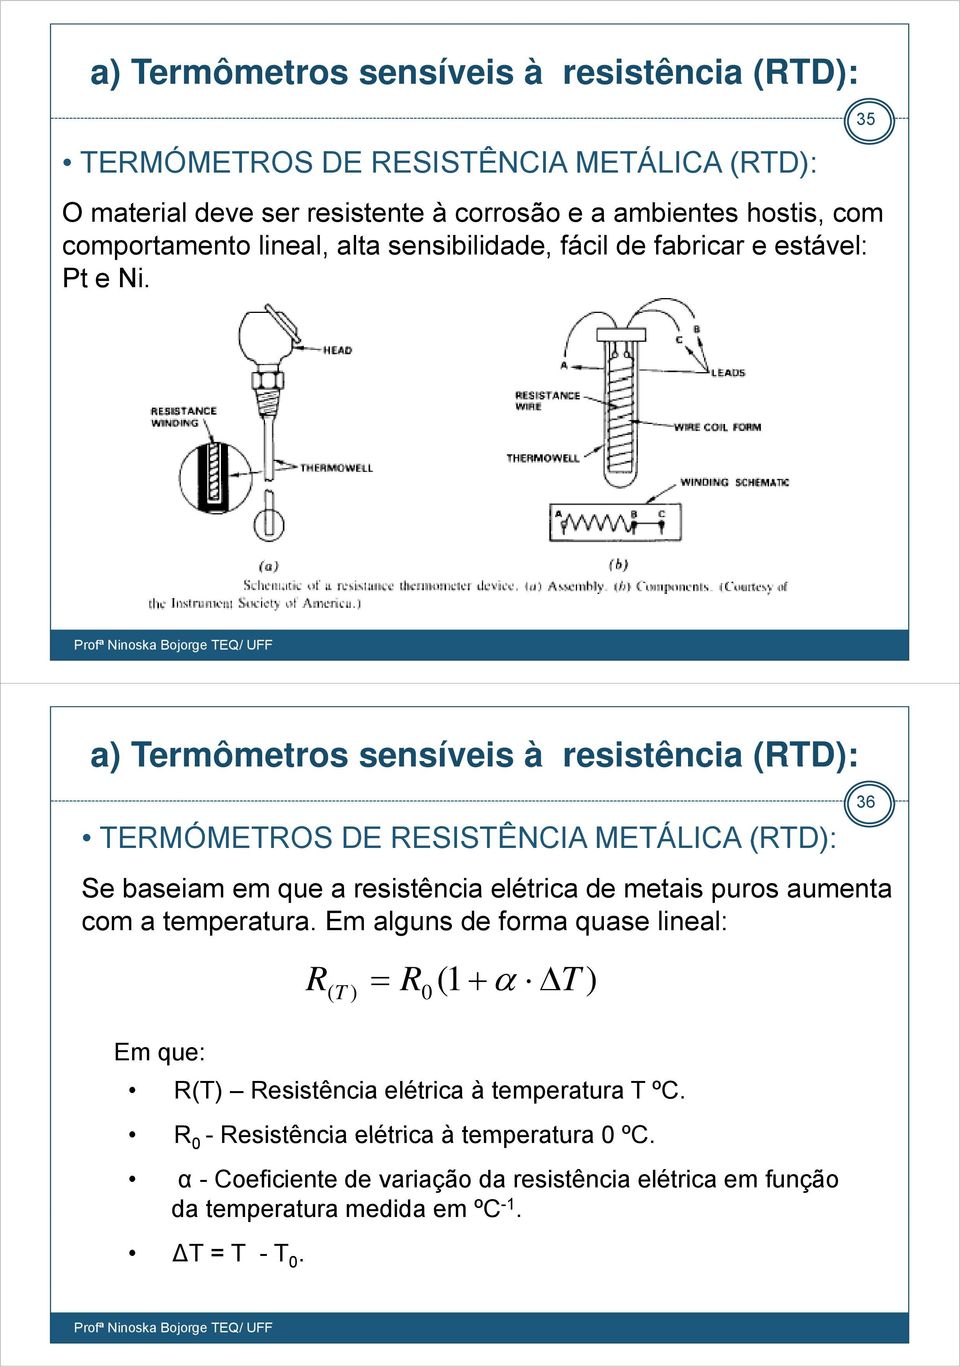 35 a) Termômetros sensíveis à resistência (RTD): TERMÓMETROS DE RESISTÊNCIA METÁLICA (RTD): 36 Se baseiam em que a resistência elétrica de metais puros aumenta com a